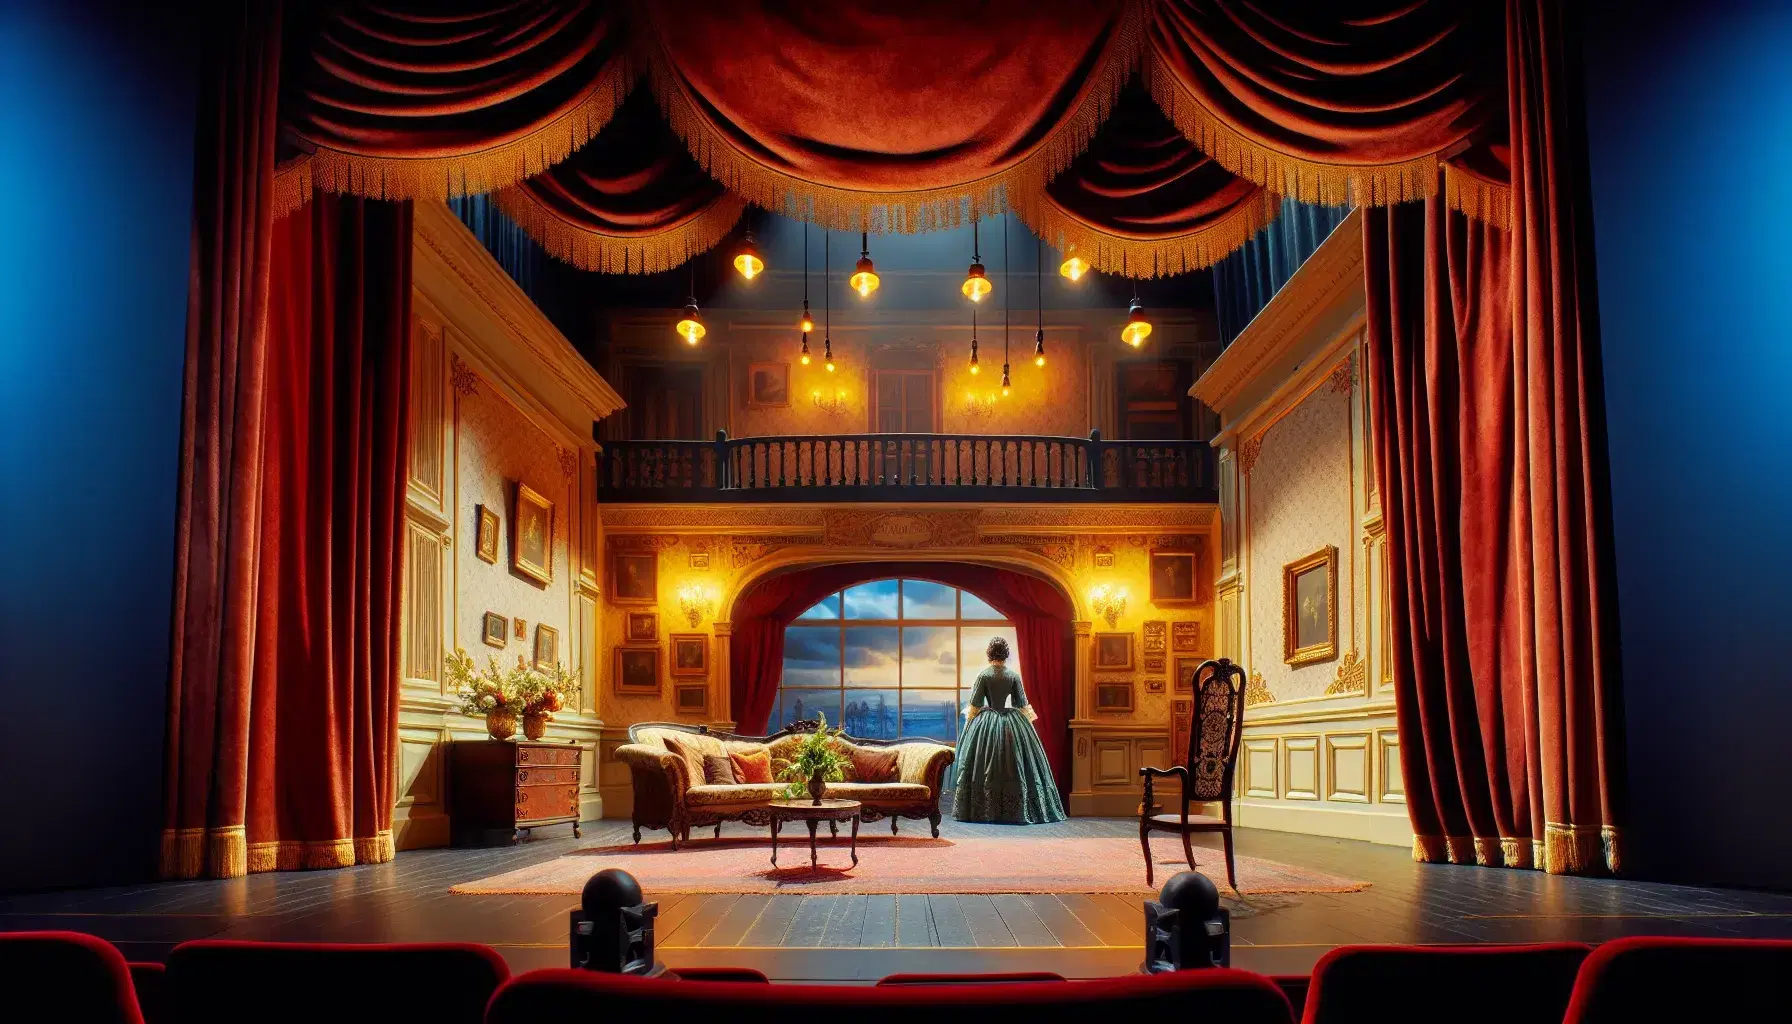 Escenario teatral con cortina de terciopelo rojo, iluminación cálida, decorado de sala de época, actriz y actor en vestuario de época posando.